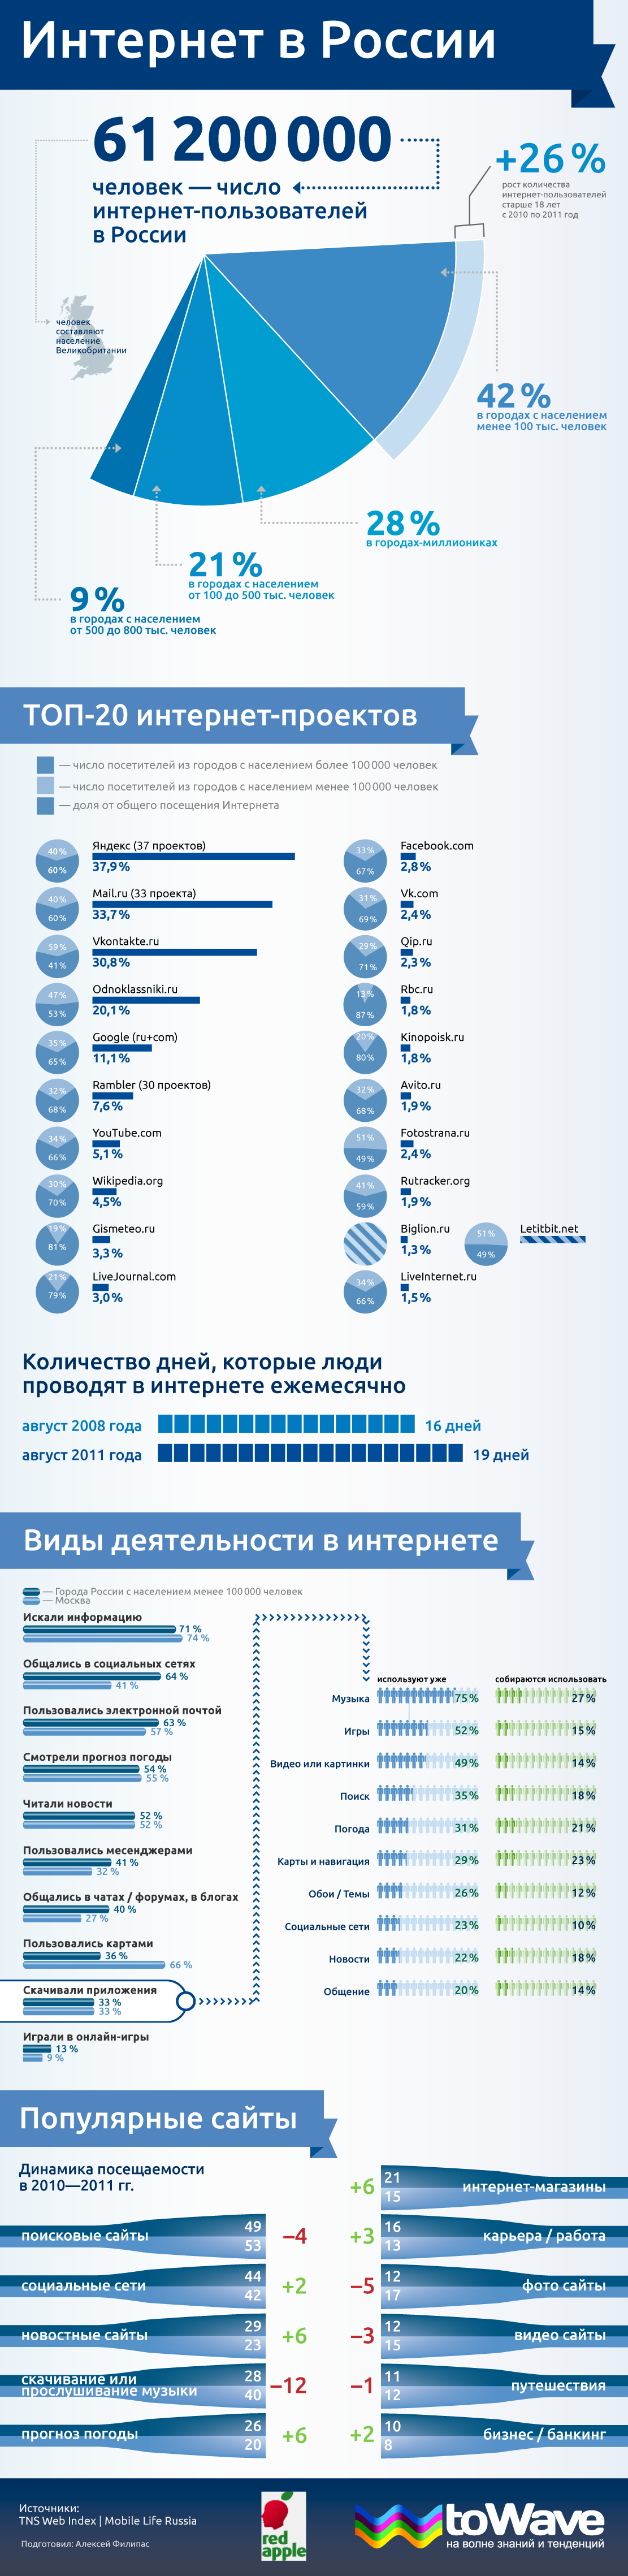 Инфографика: Интернет в России